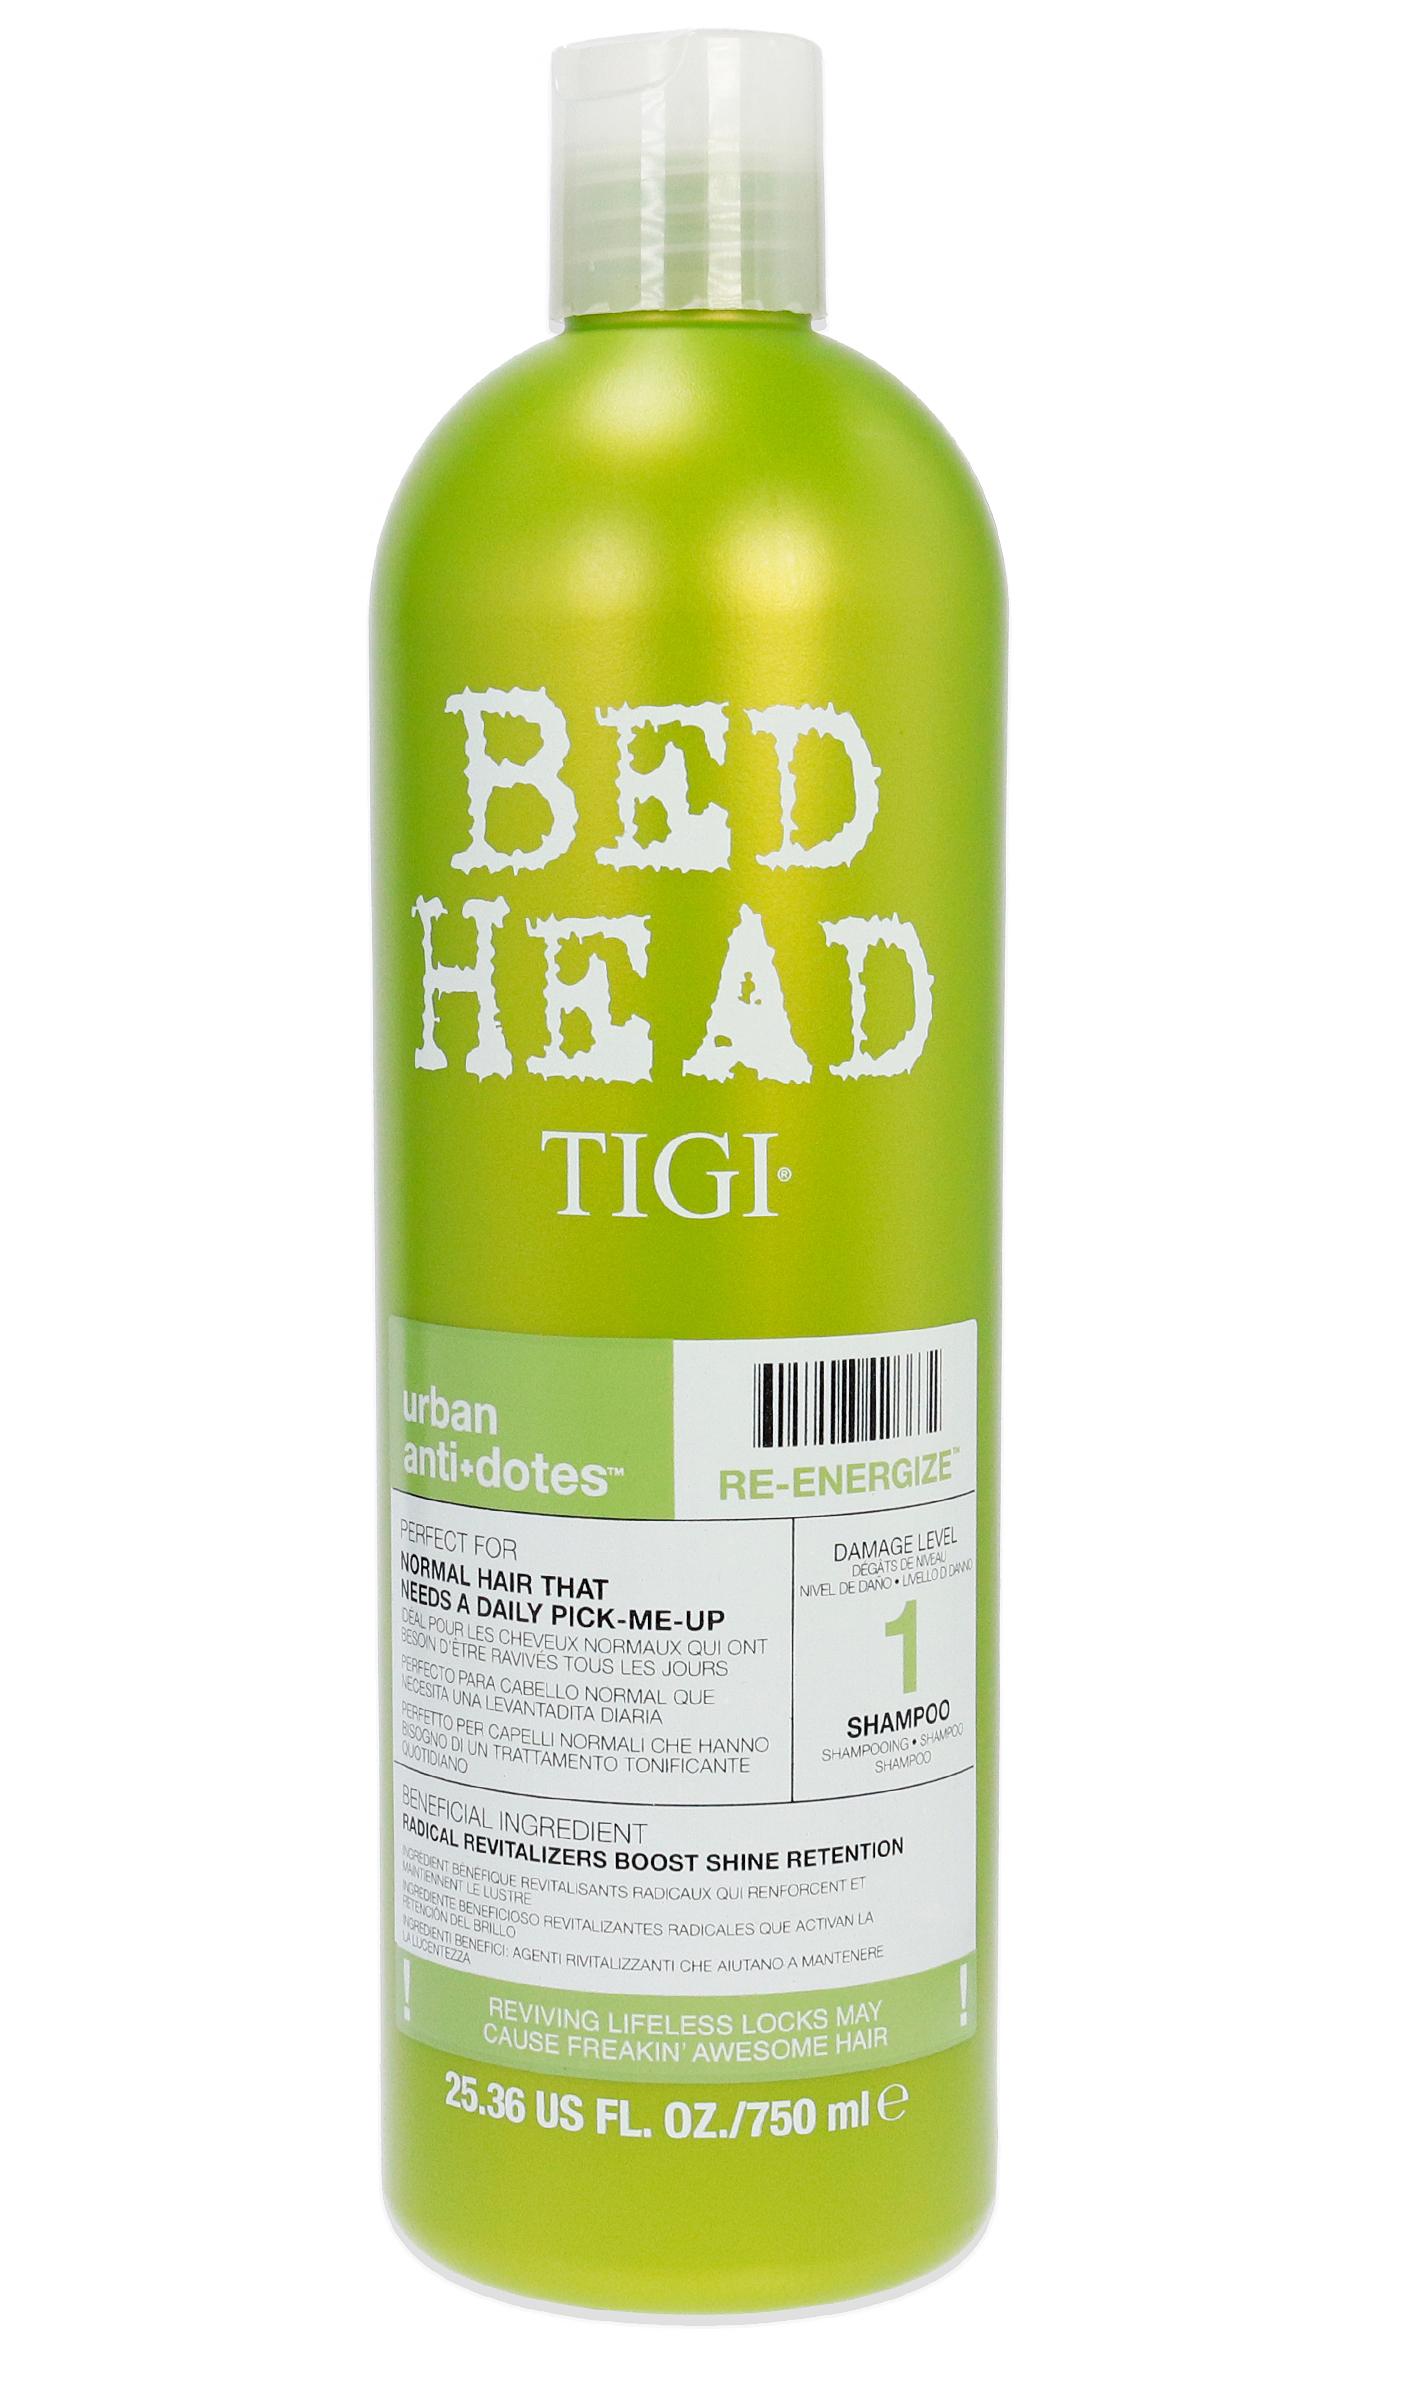 【正規品】【送料無料 】 TIGI Bed Head Urban Antidotes 1 Re-Energize Shampoo 750ml ティージー ベッドヘッド アーバン アンチドット シャンプー 【海外直送】